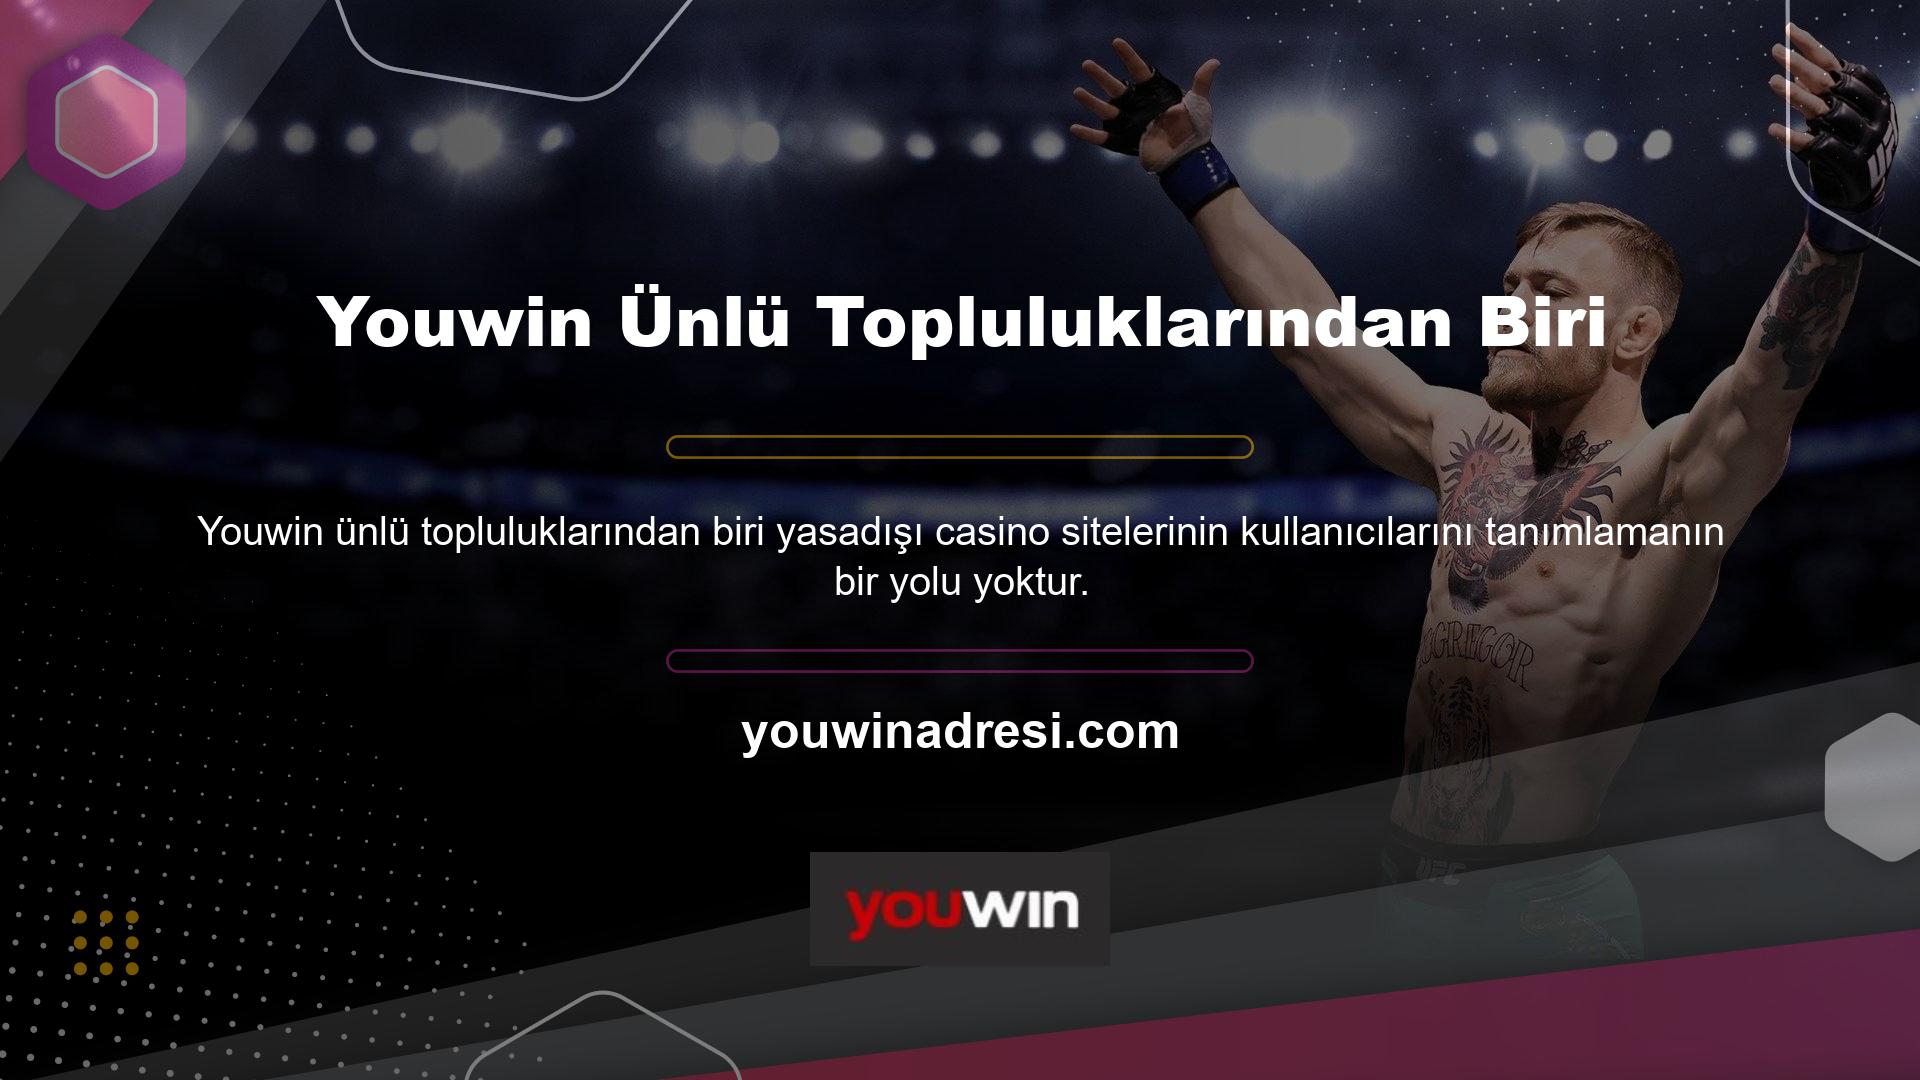 Türkiye'nin en ünlü topluluklarından biri olan Youwin herhangi bir mobil cihaz veya bilgisayardan erişilebilmektedir